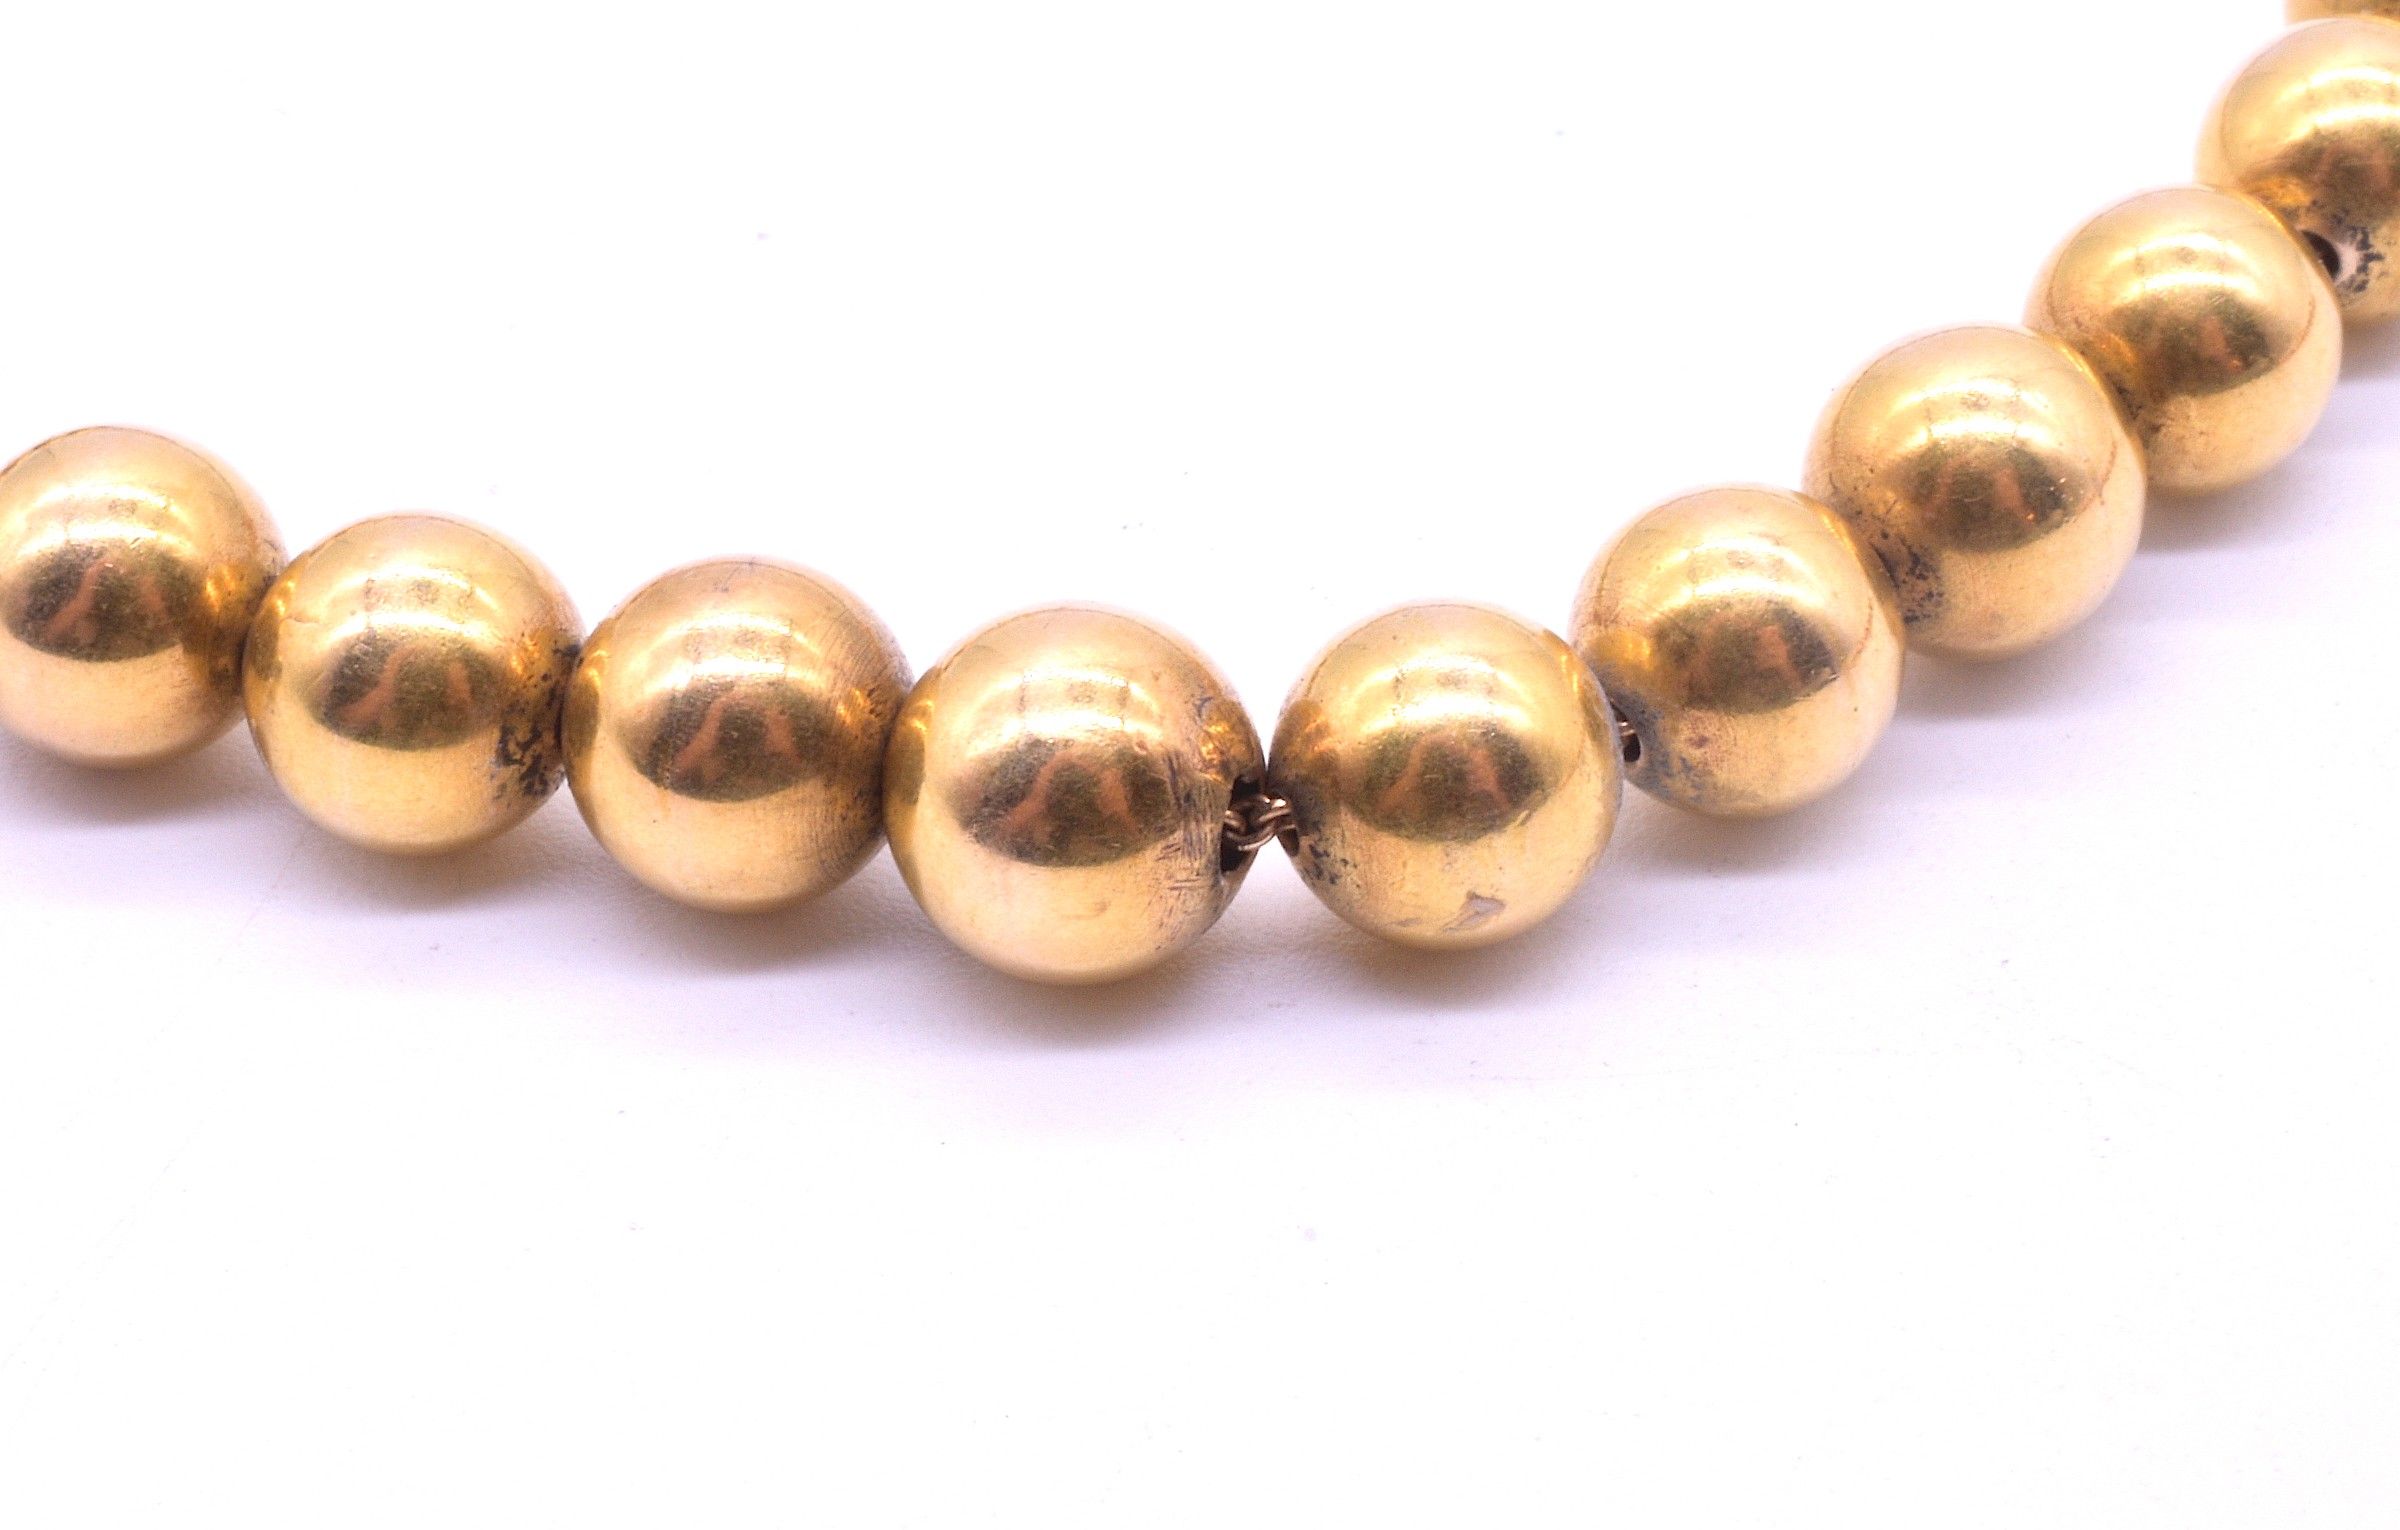 Antique 18K Gold Victorian Gold Beaded Collar Necklace, circa 1860